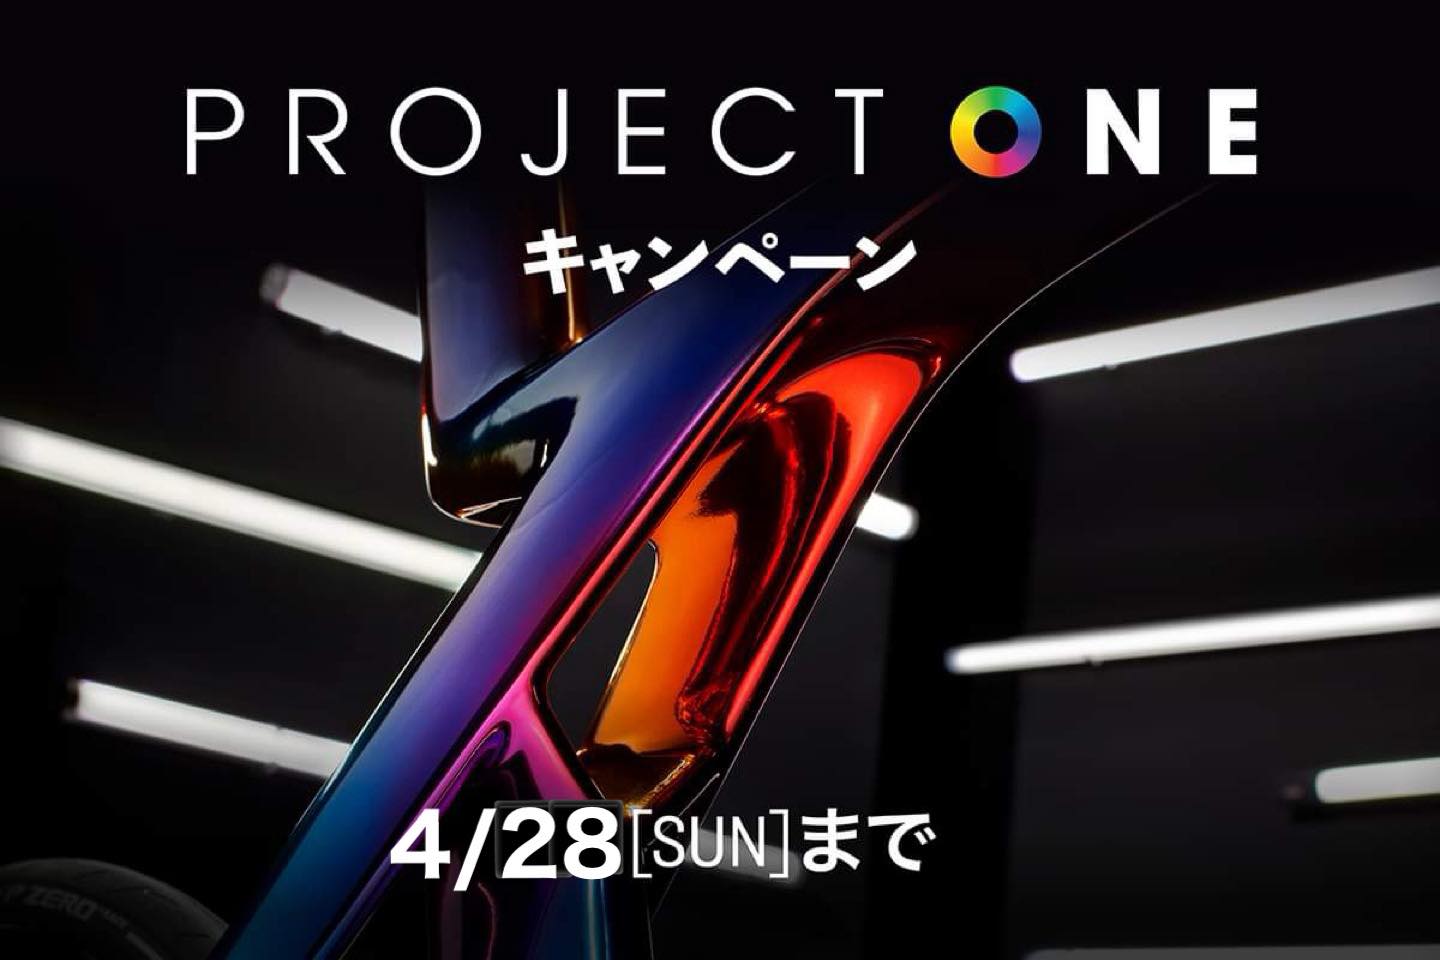 【キャンペーン】 Project One キャンペーンのおしらせ！！